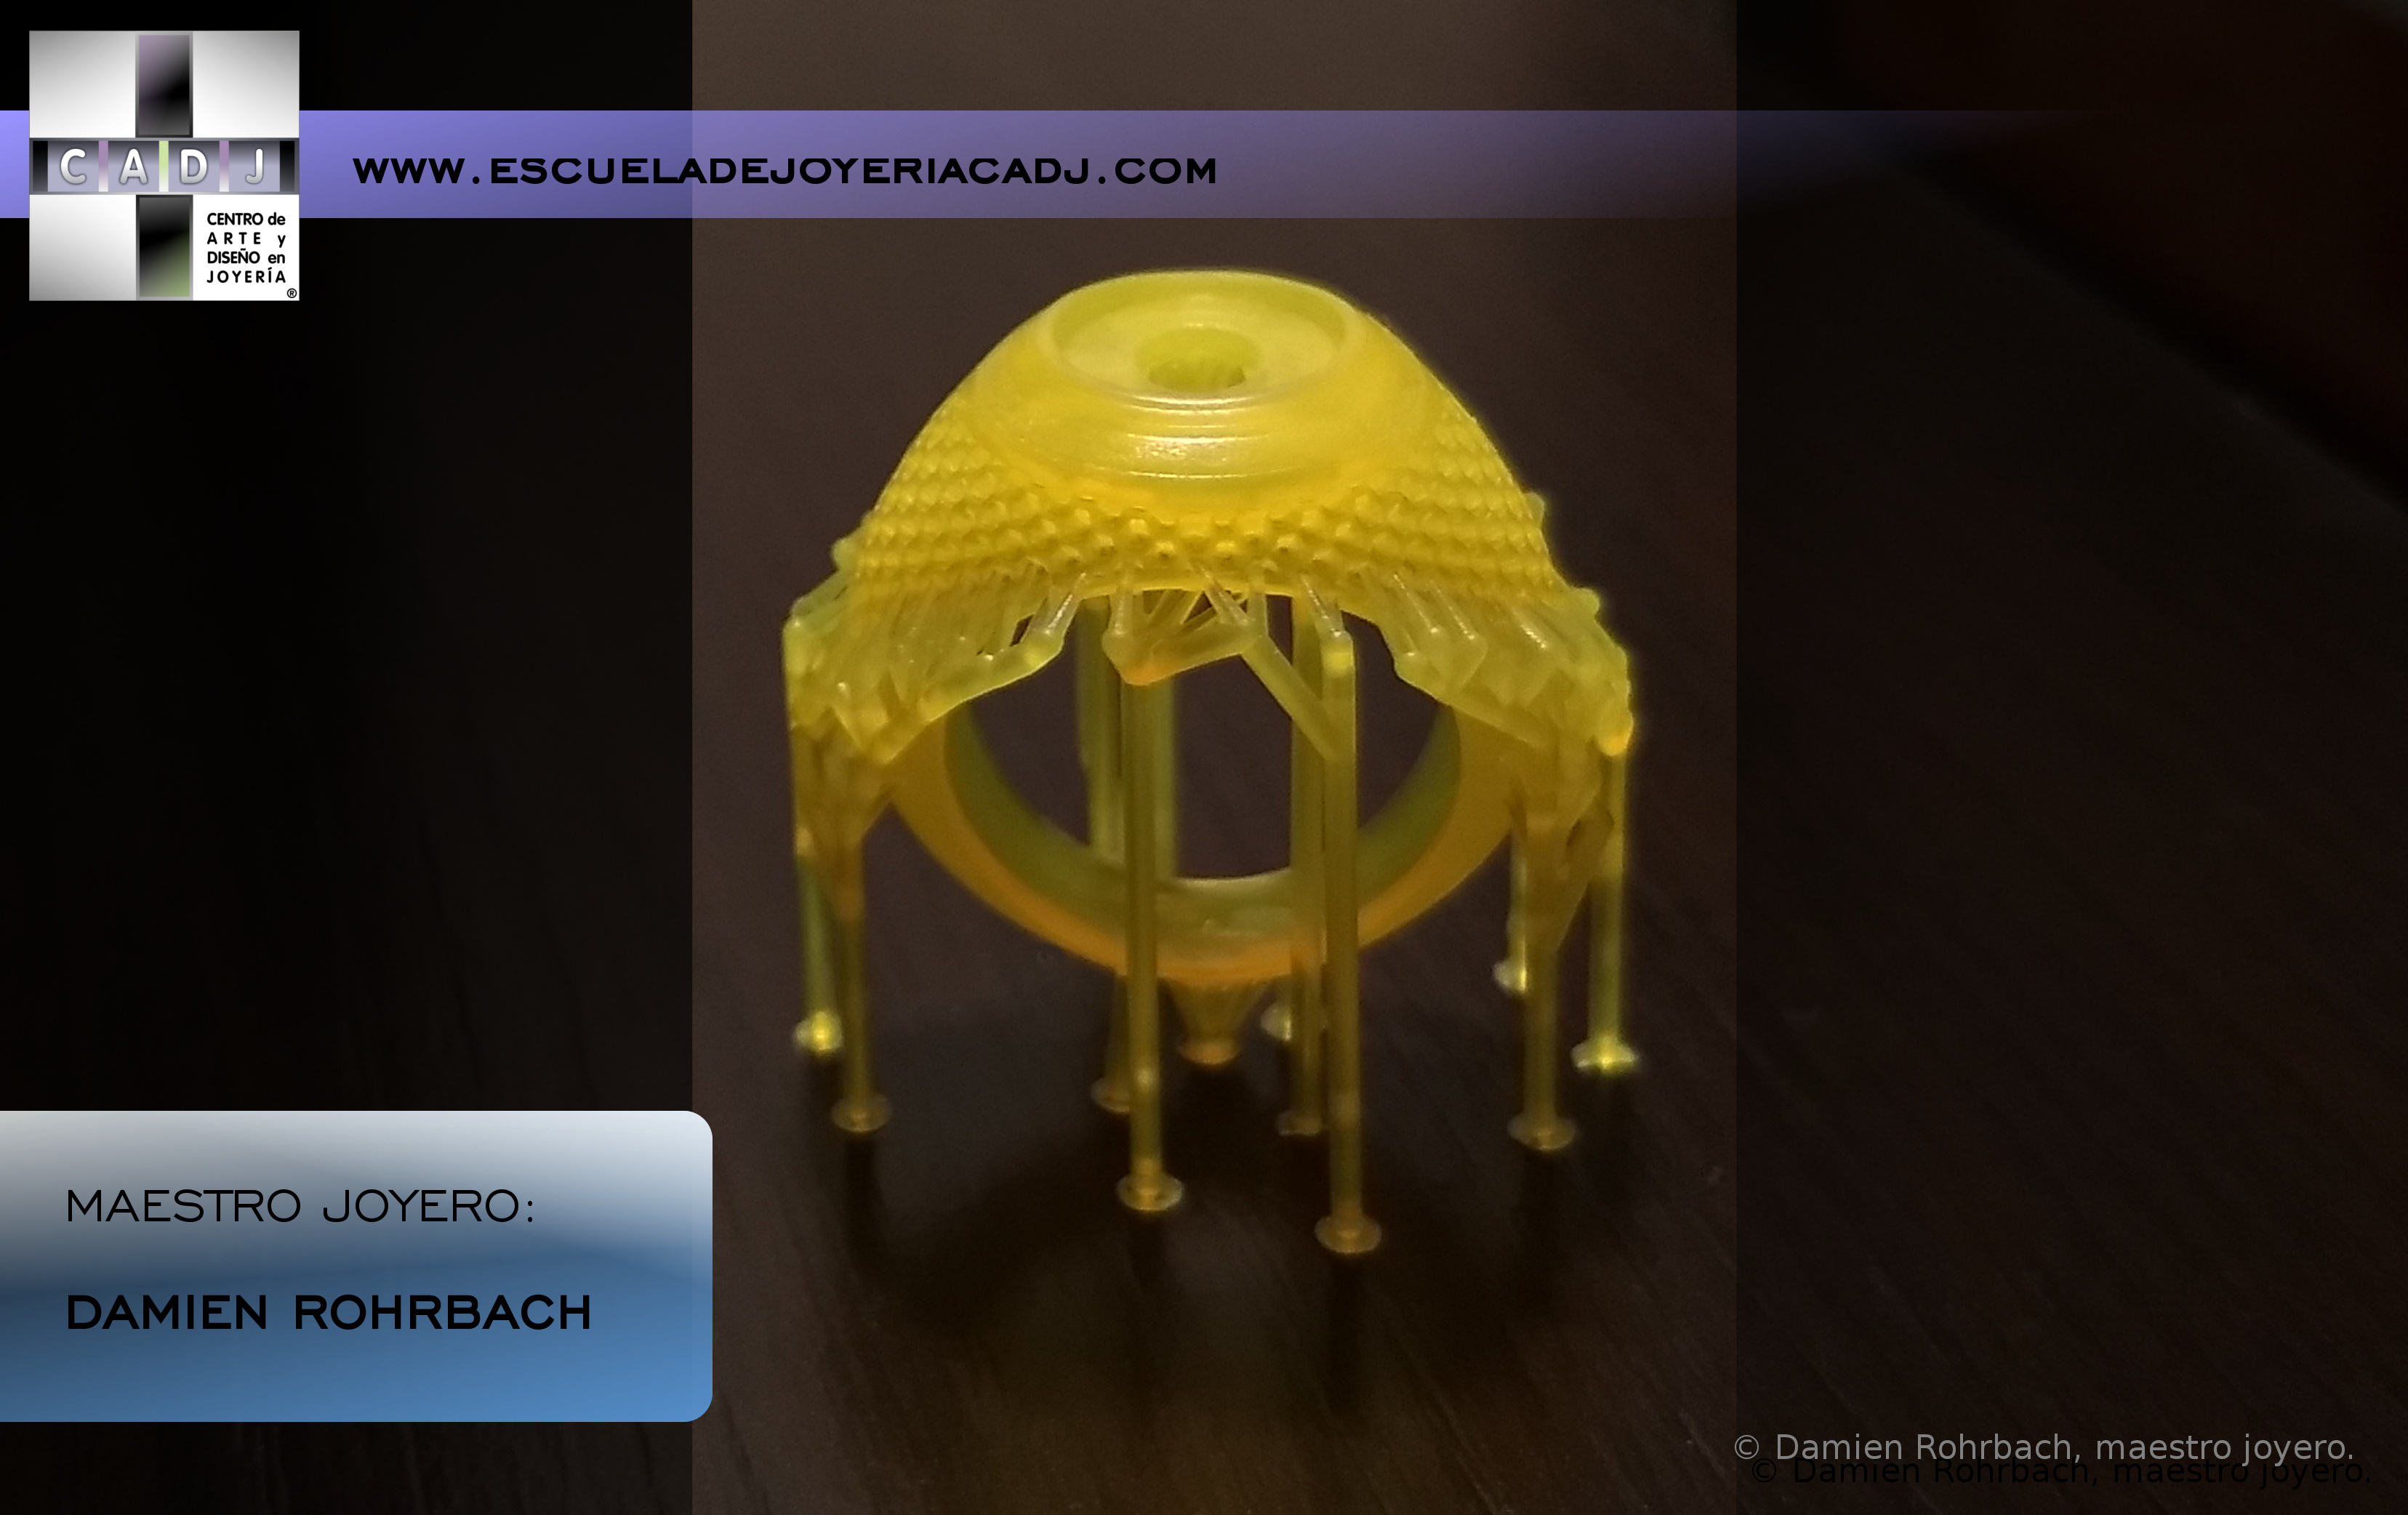 Impresión 3D, Escuela de joyería CADJ ®